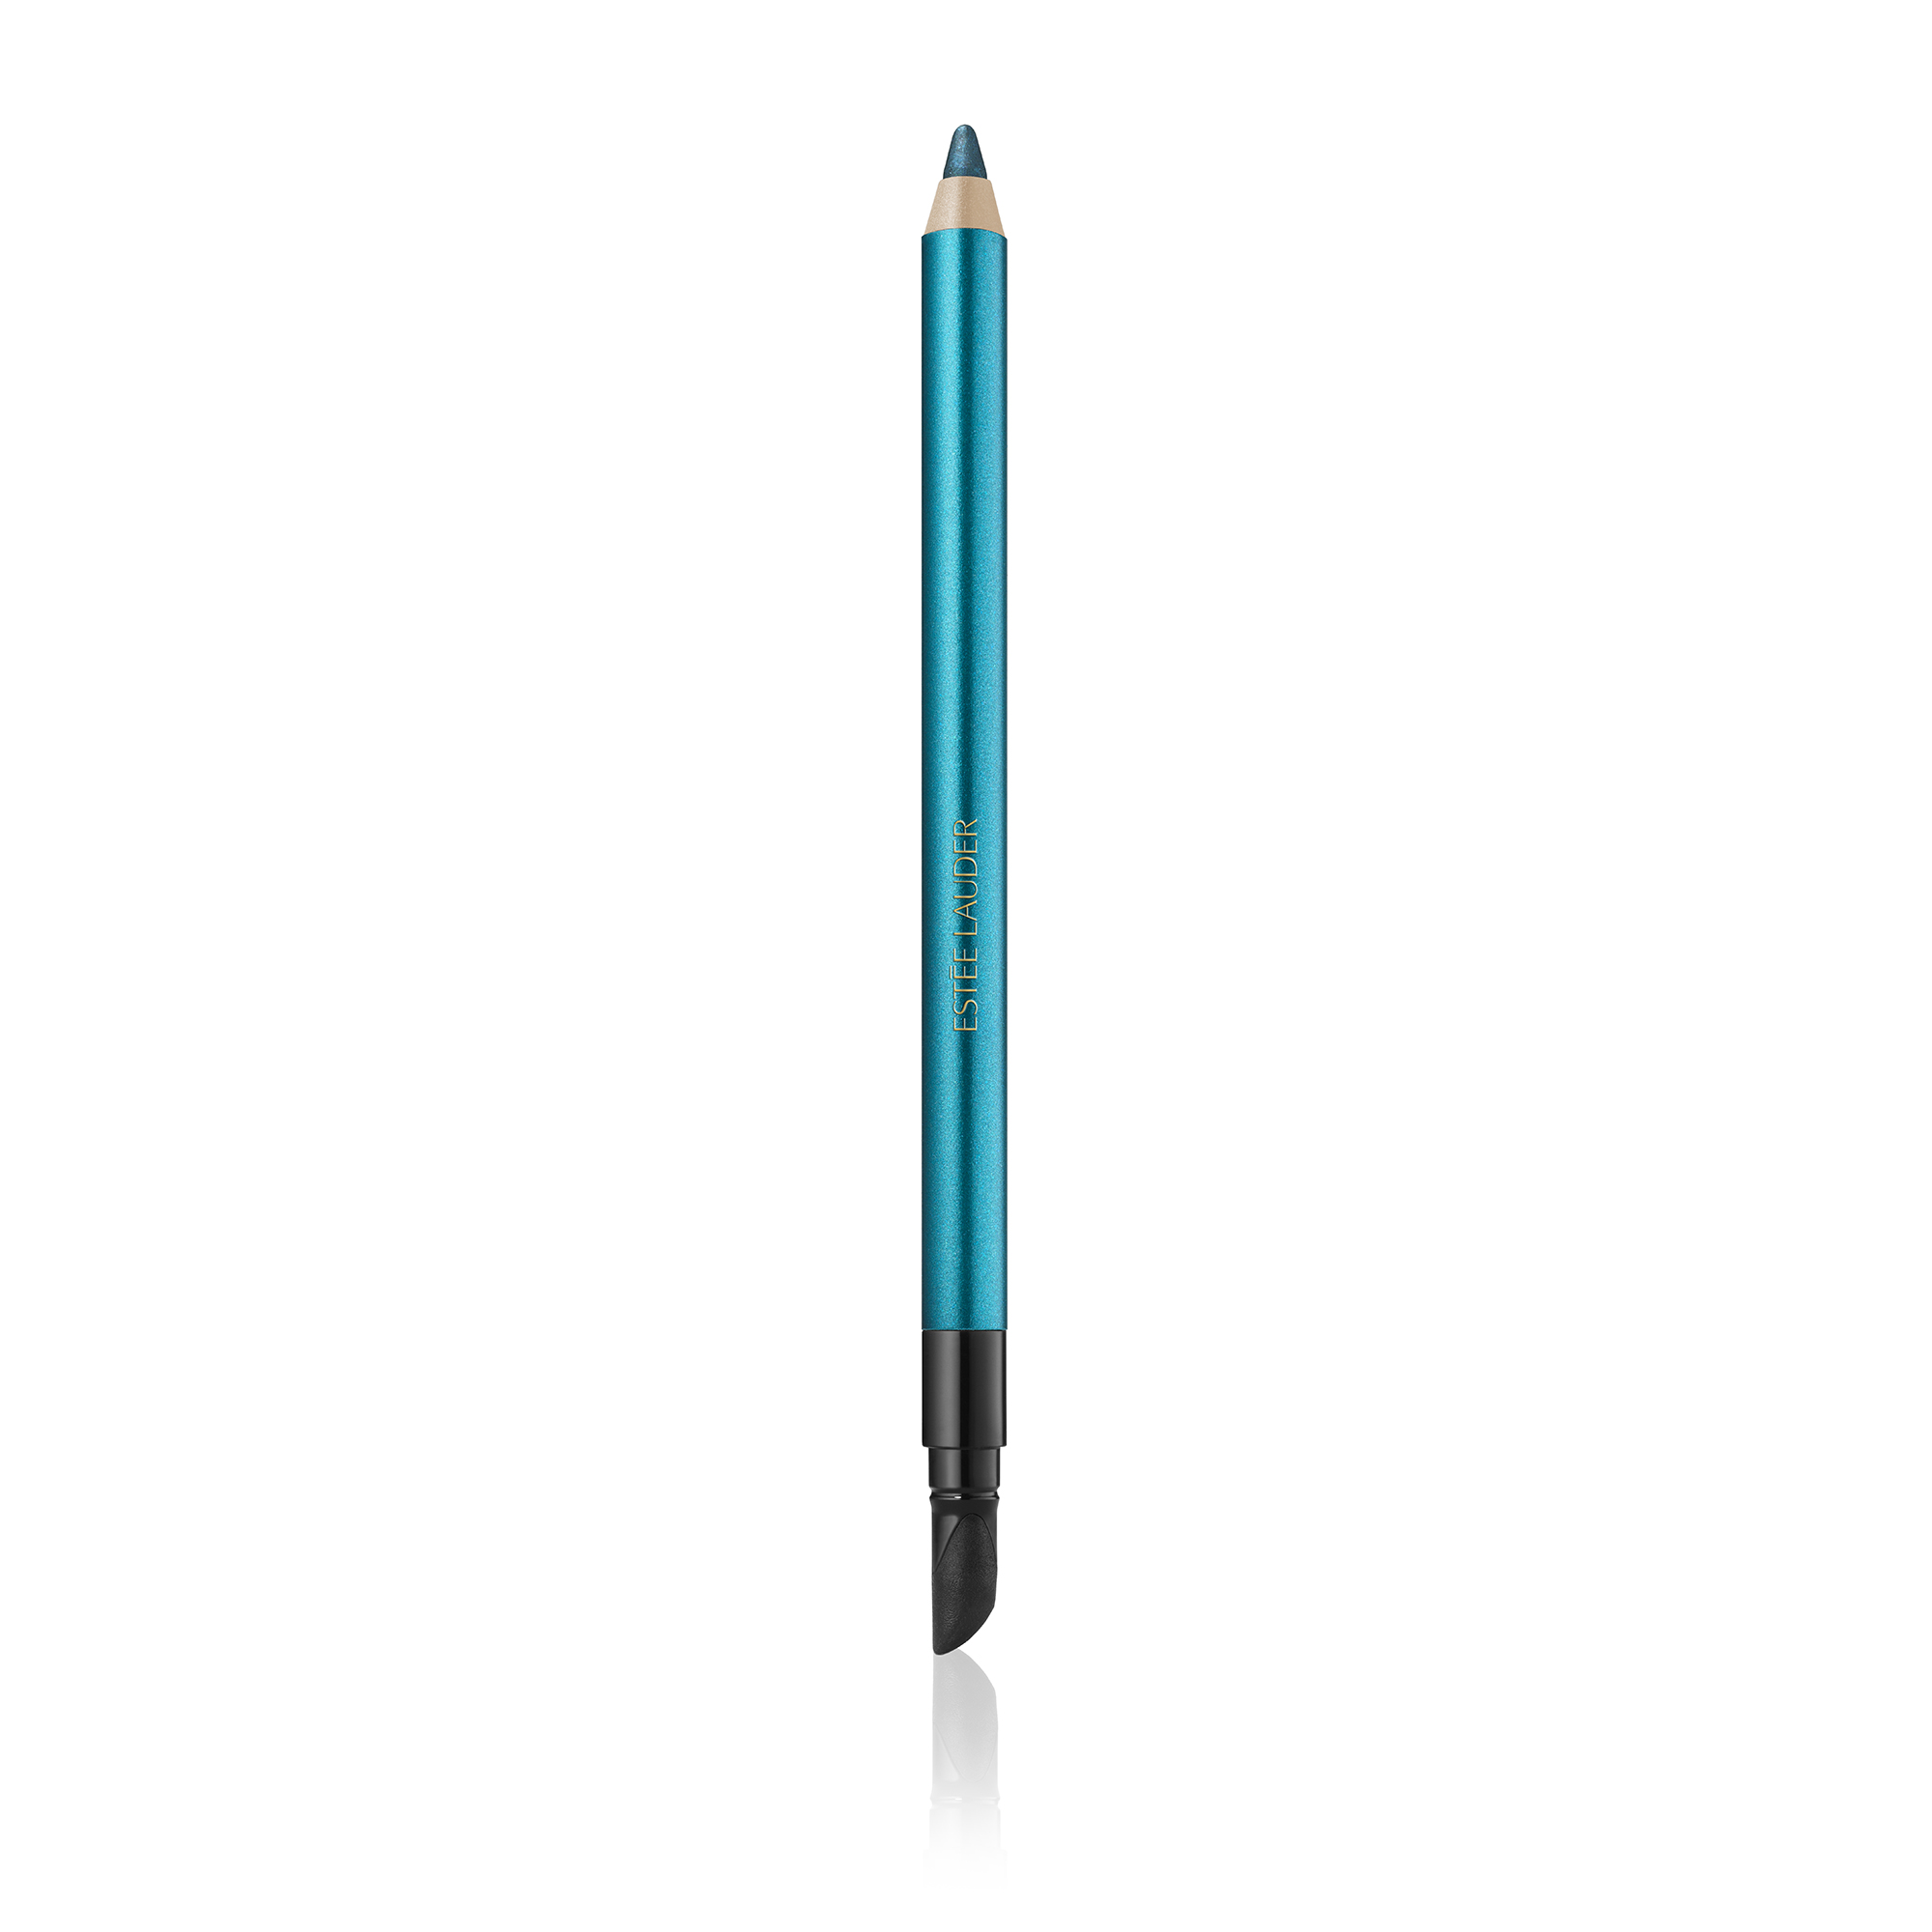  Double Wear 24H Waterproof Gel Eye Pencil, Turquoise